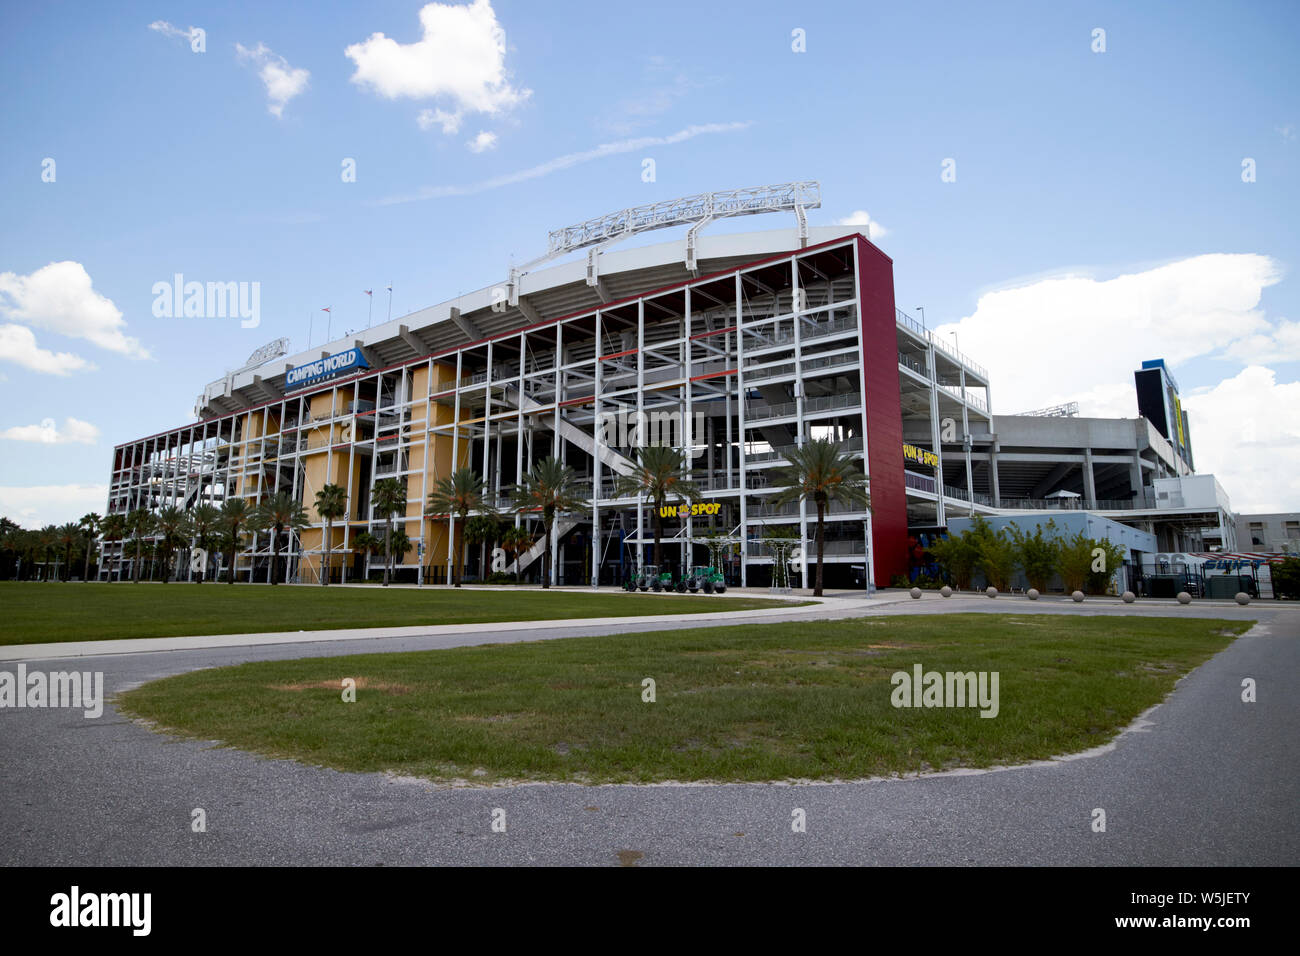 Camping World Stadium Orlando florida usa united states of america Stock Photo